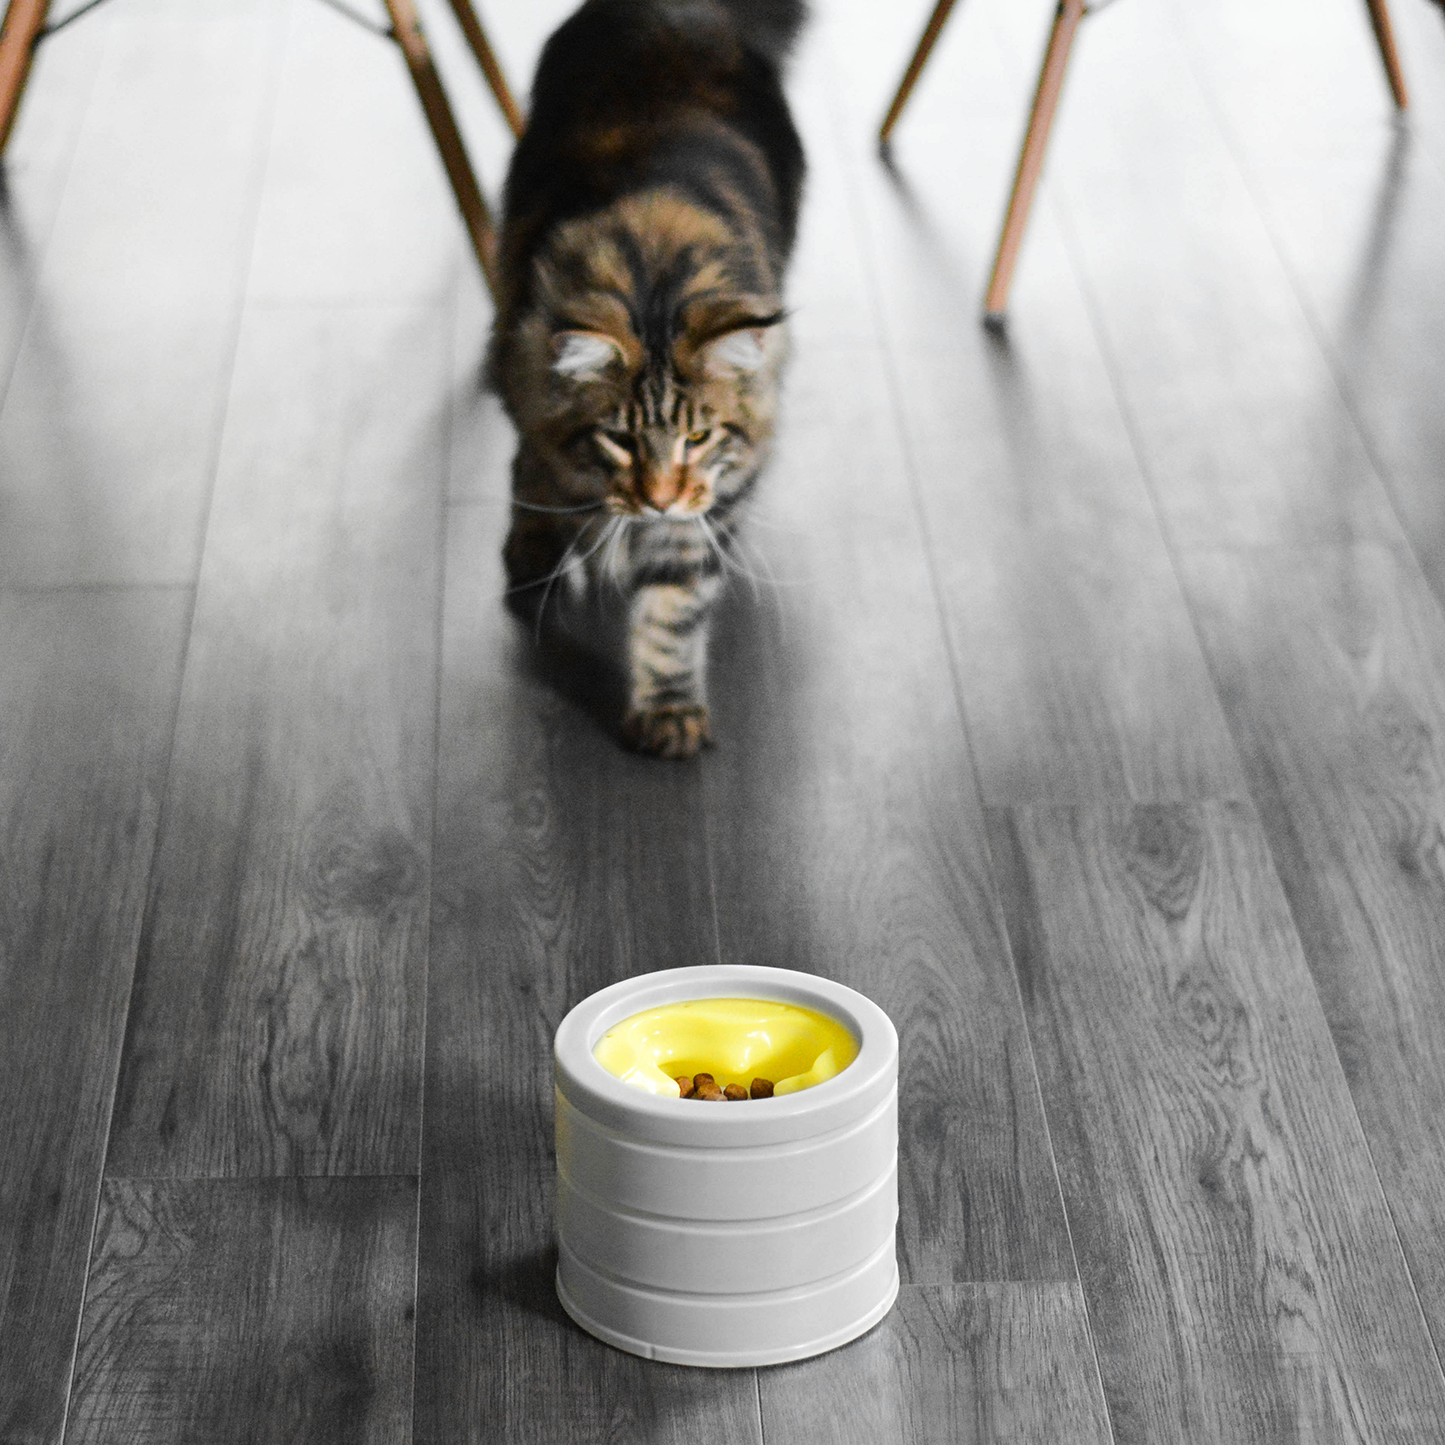 Intellikatt award winning interactive cat bowl